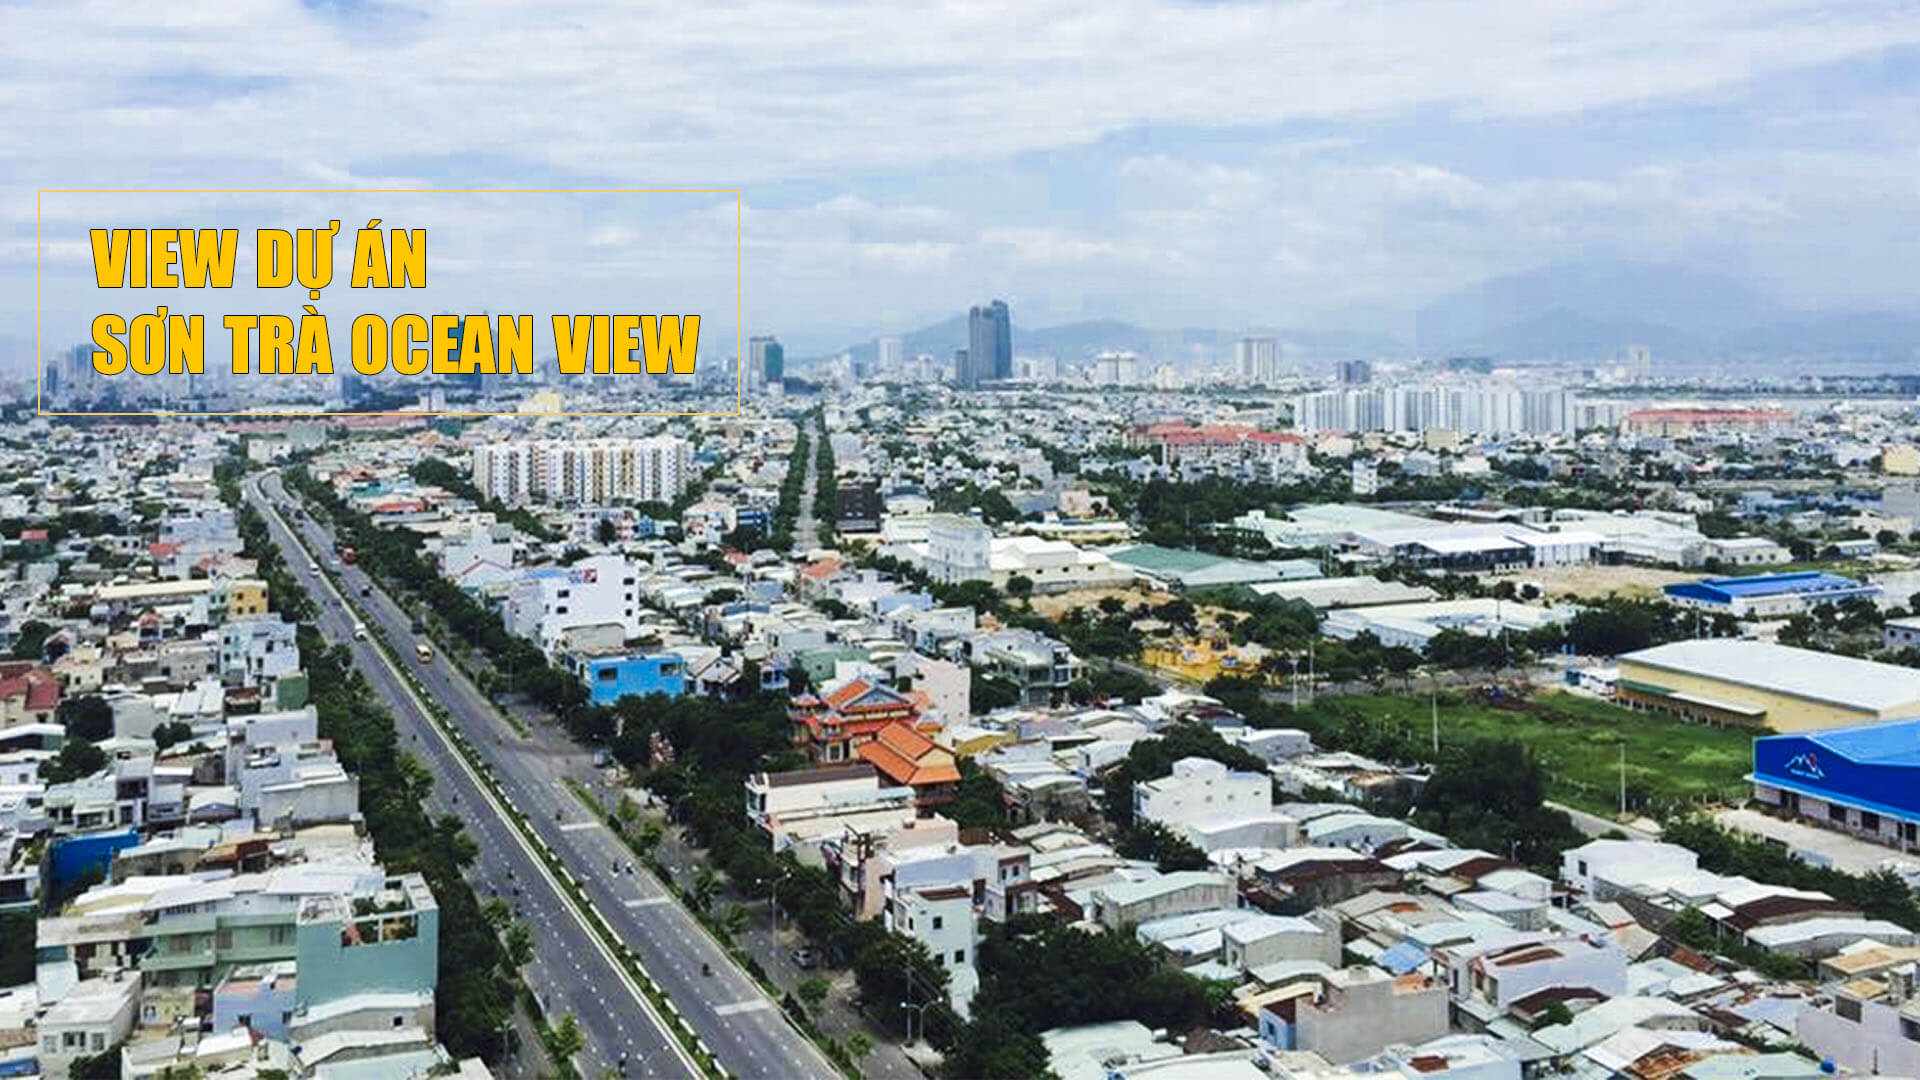 View nhìn trung tâm thành phố từ dự án Sơn Trà Ocean View